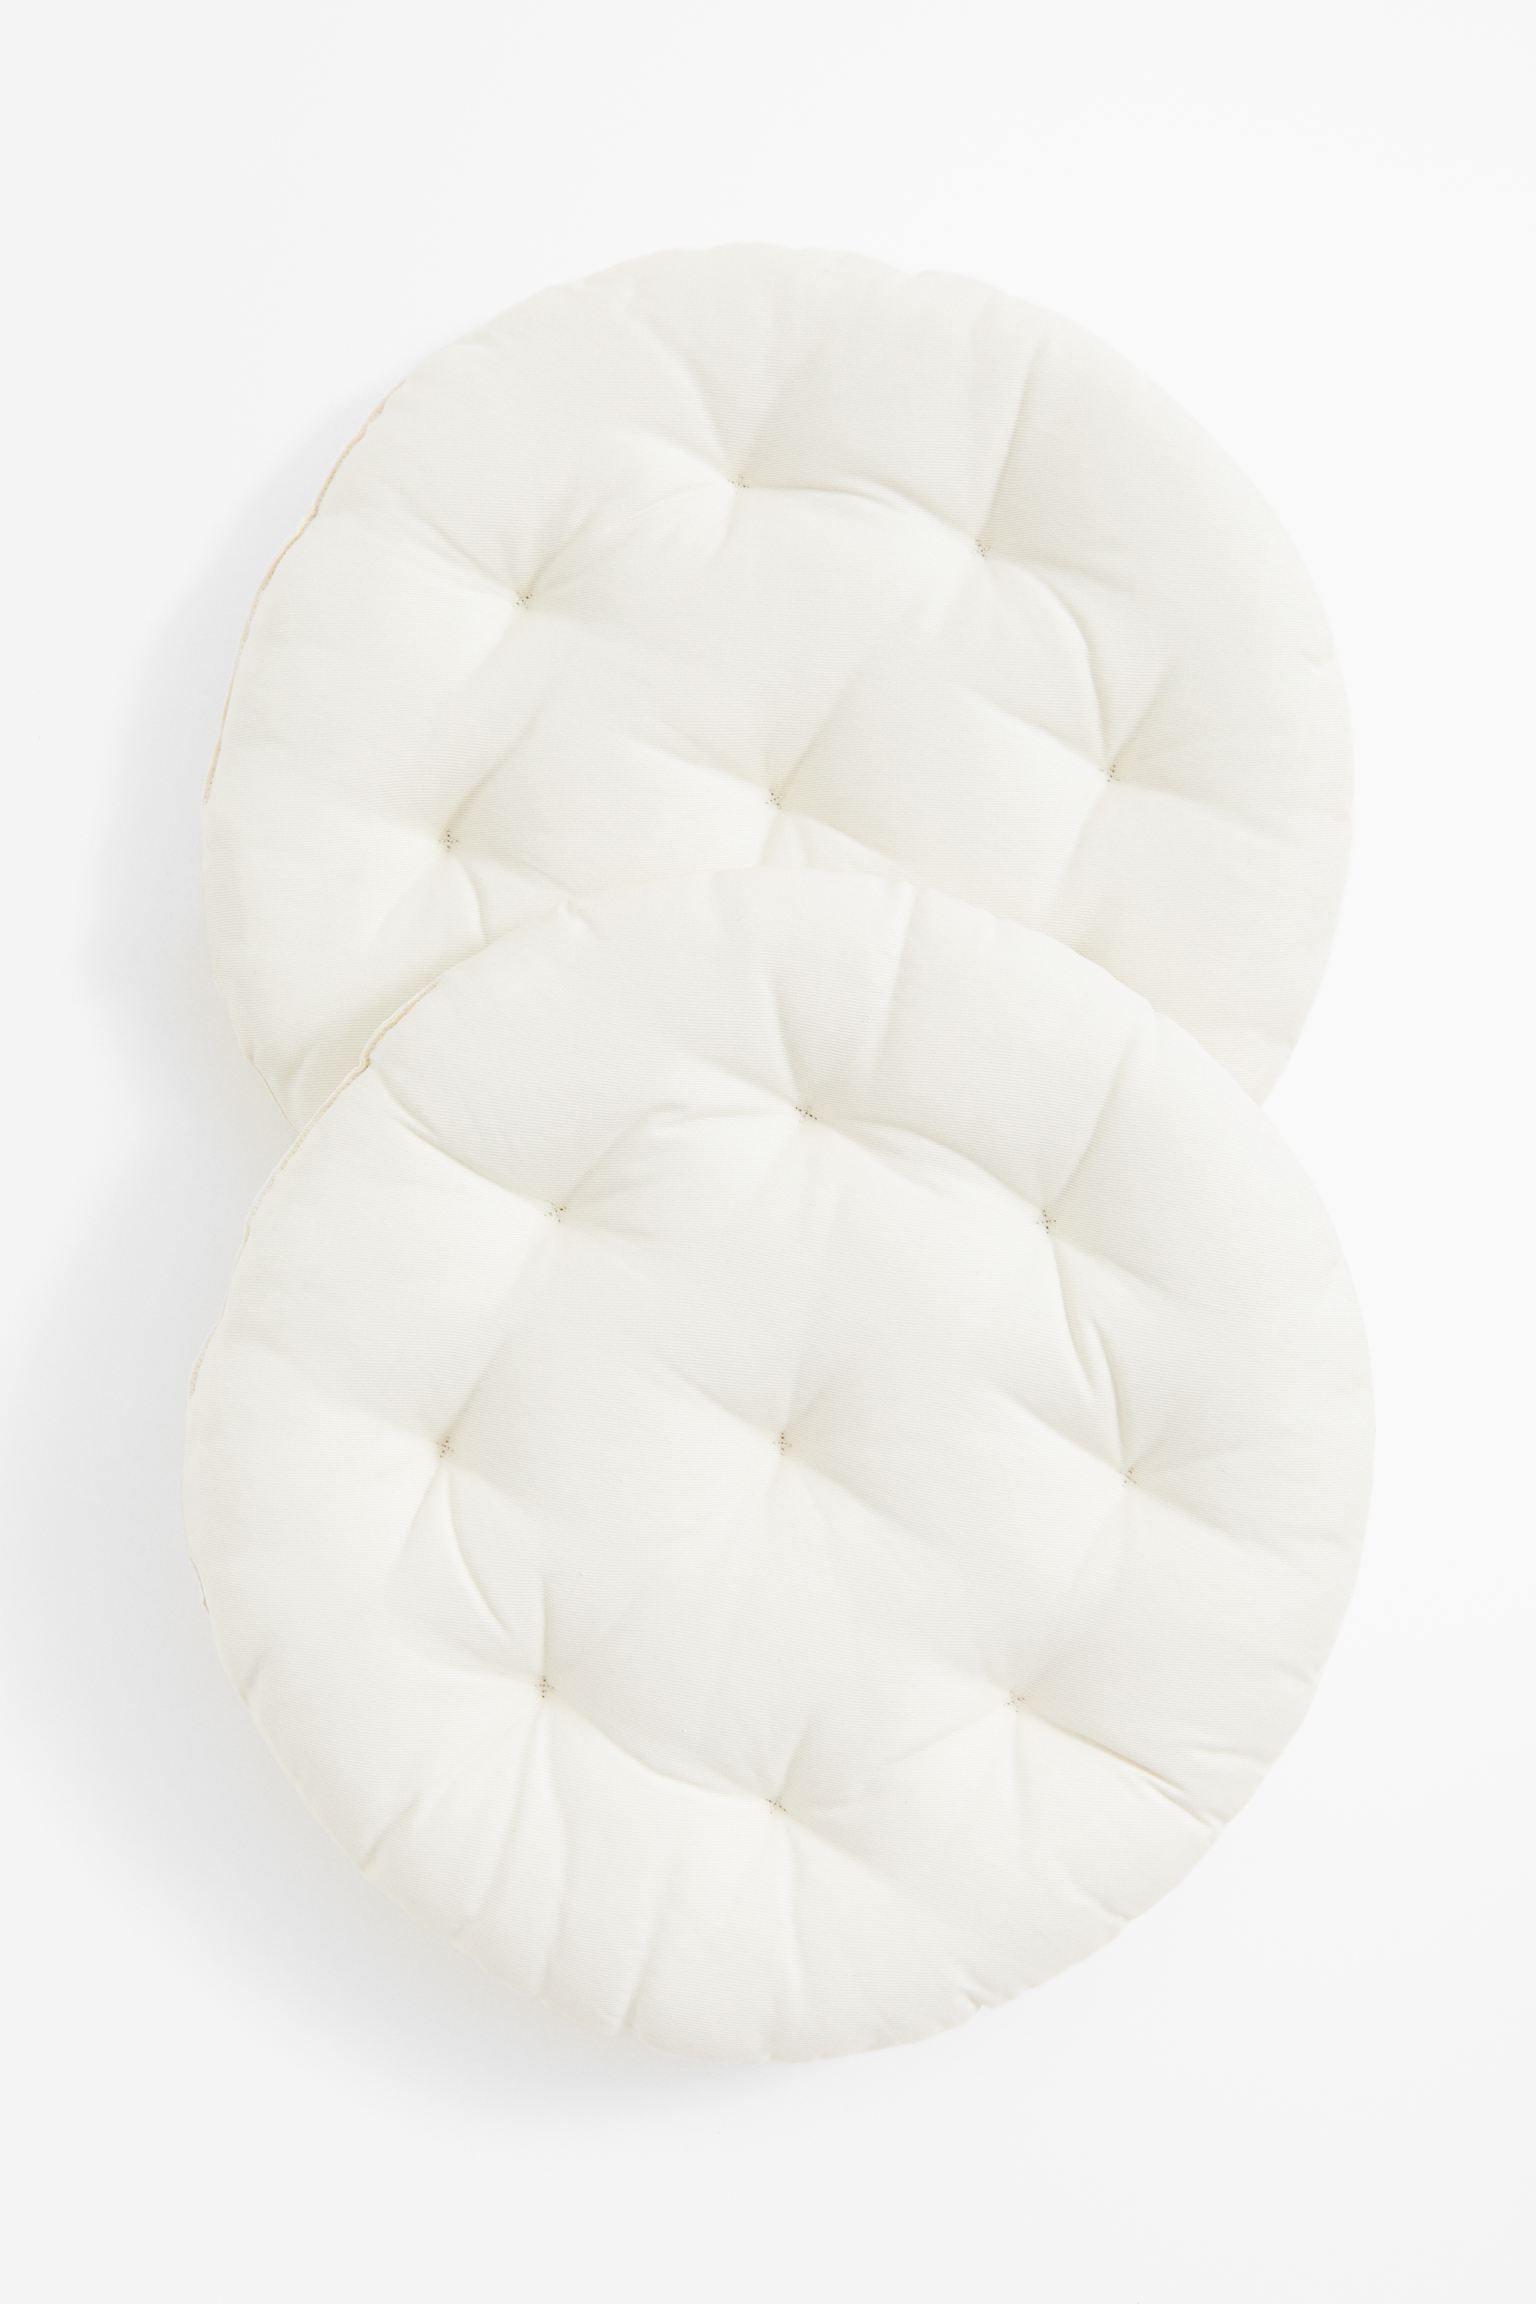 Кругла подушка на стілець, 2 шт., Натуральний білий, Різні розміри